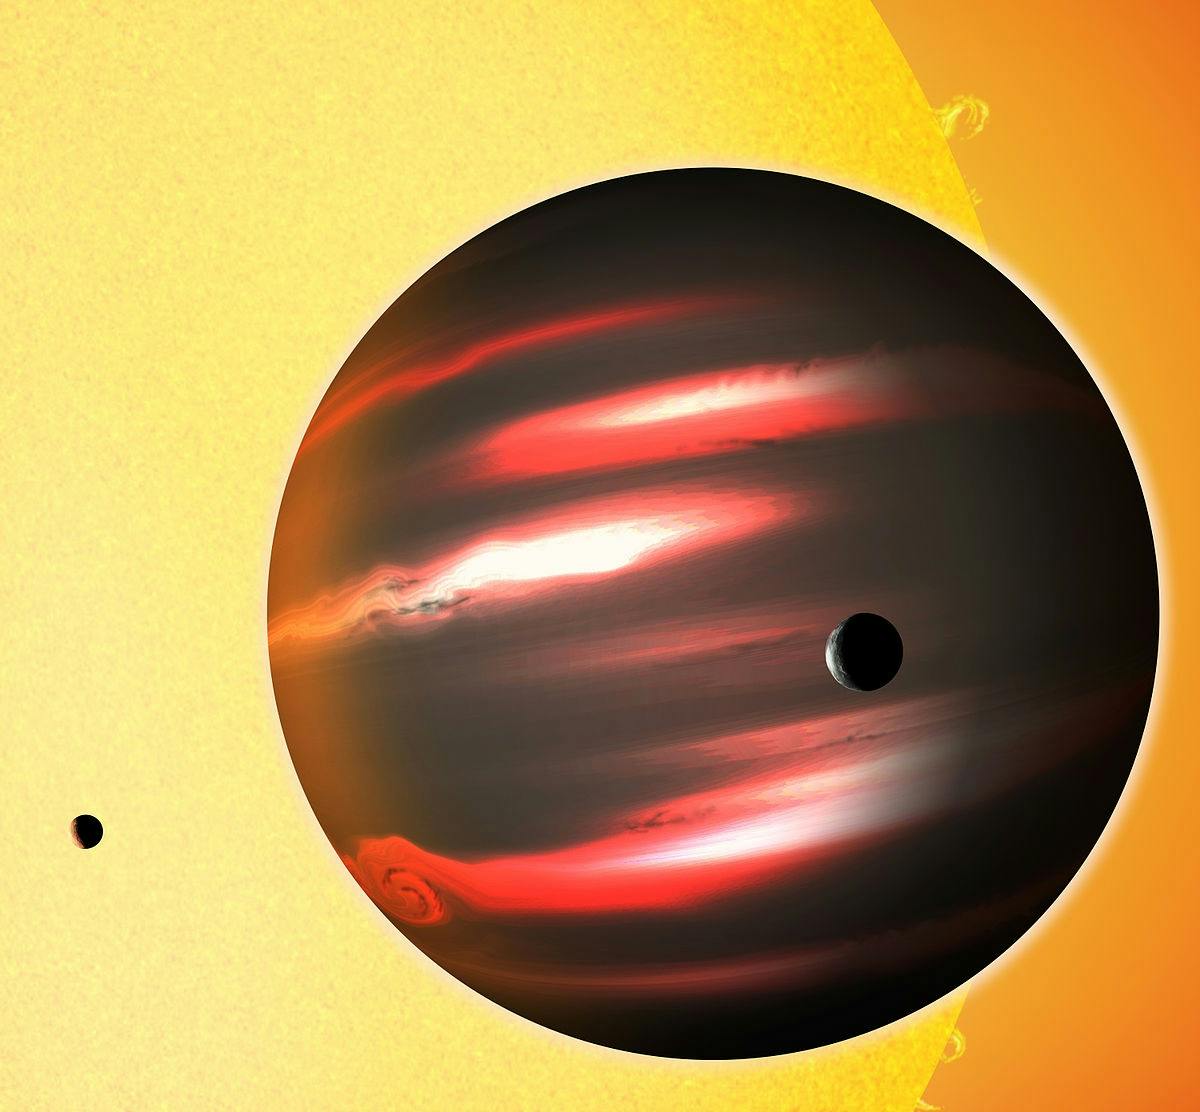 Kepler-1b